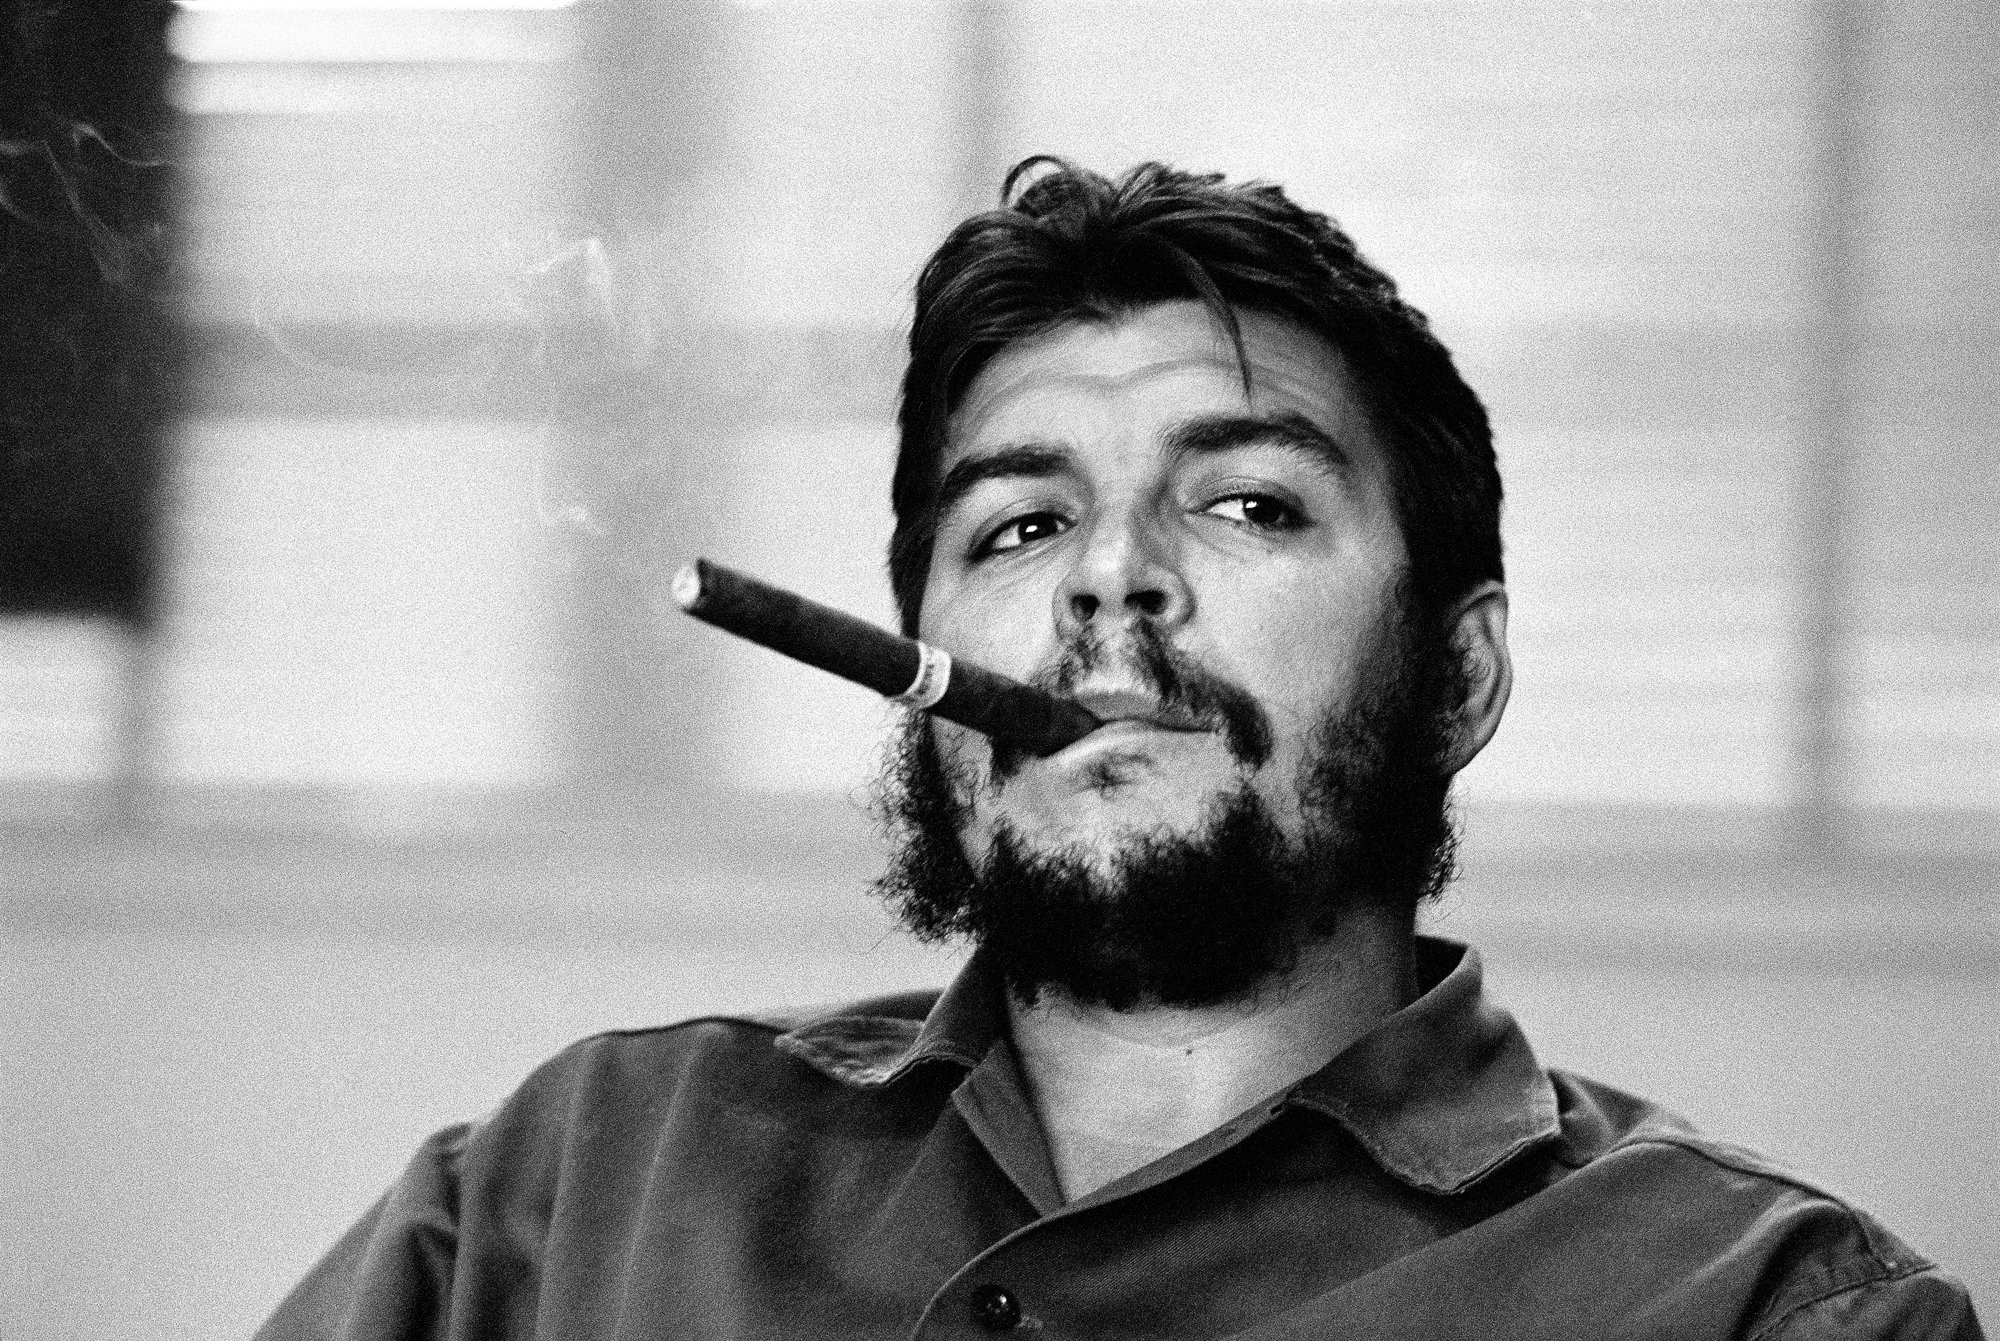 white-black-monochrome-portrait-photography-hair-moustache-Person-Che-Guevara-head-man-beard-male-hairstyle-black-and-white-monochrome-photography-facial-hair-86038.jpg